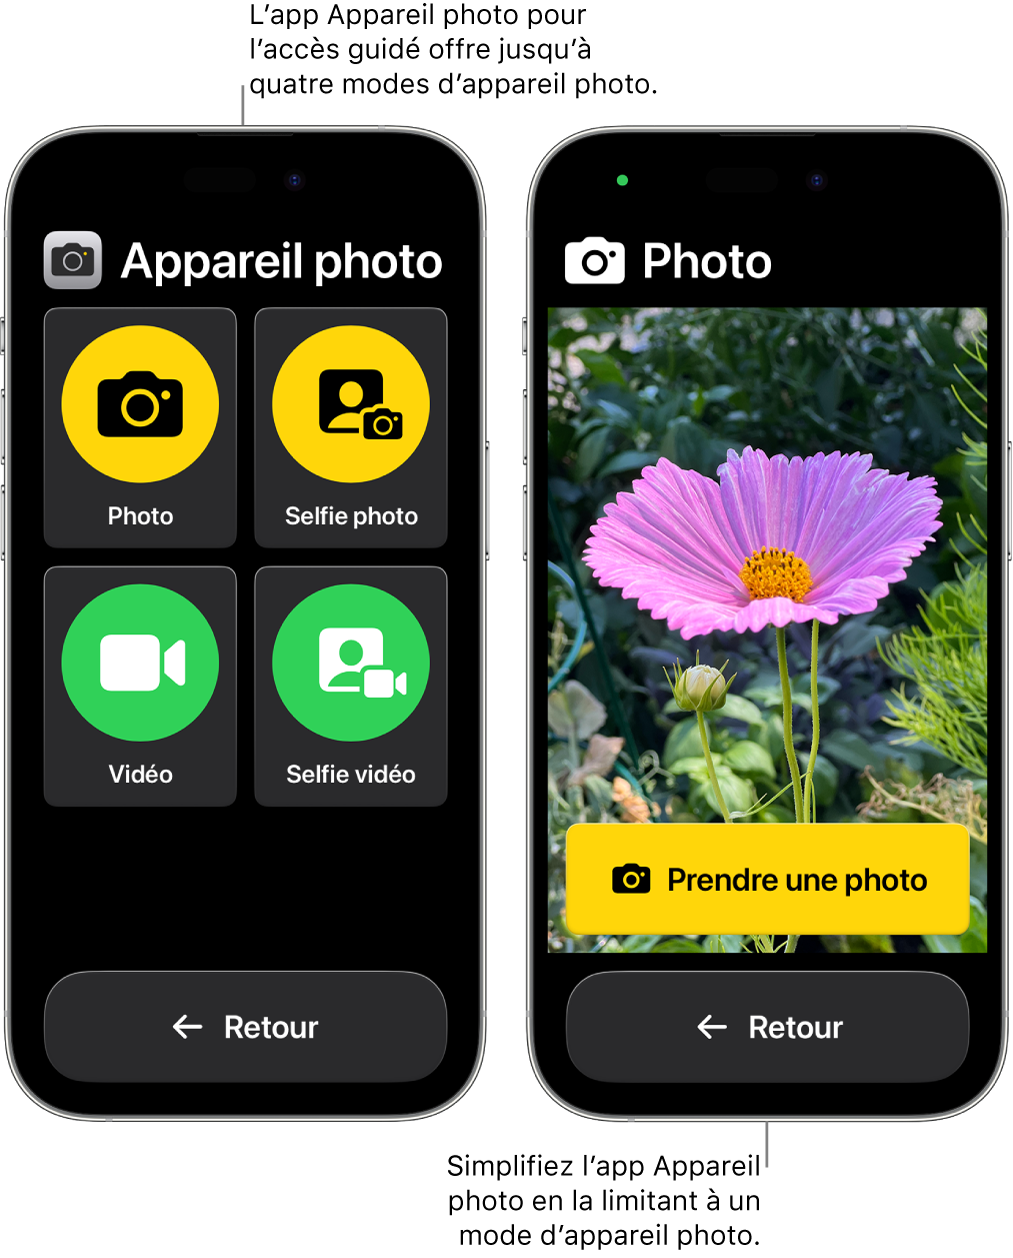 Deux iPhone dans Accès d’aide. Un iPhone affiche l’app Appareil photo avec des modes d’appareil photo proposés à l’utilisateur, comme Vidéo et Selfie photo. L’autre iPhone affiche l’app Appareil photo avec un seul mode pour prendre des photos.